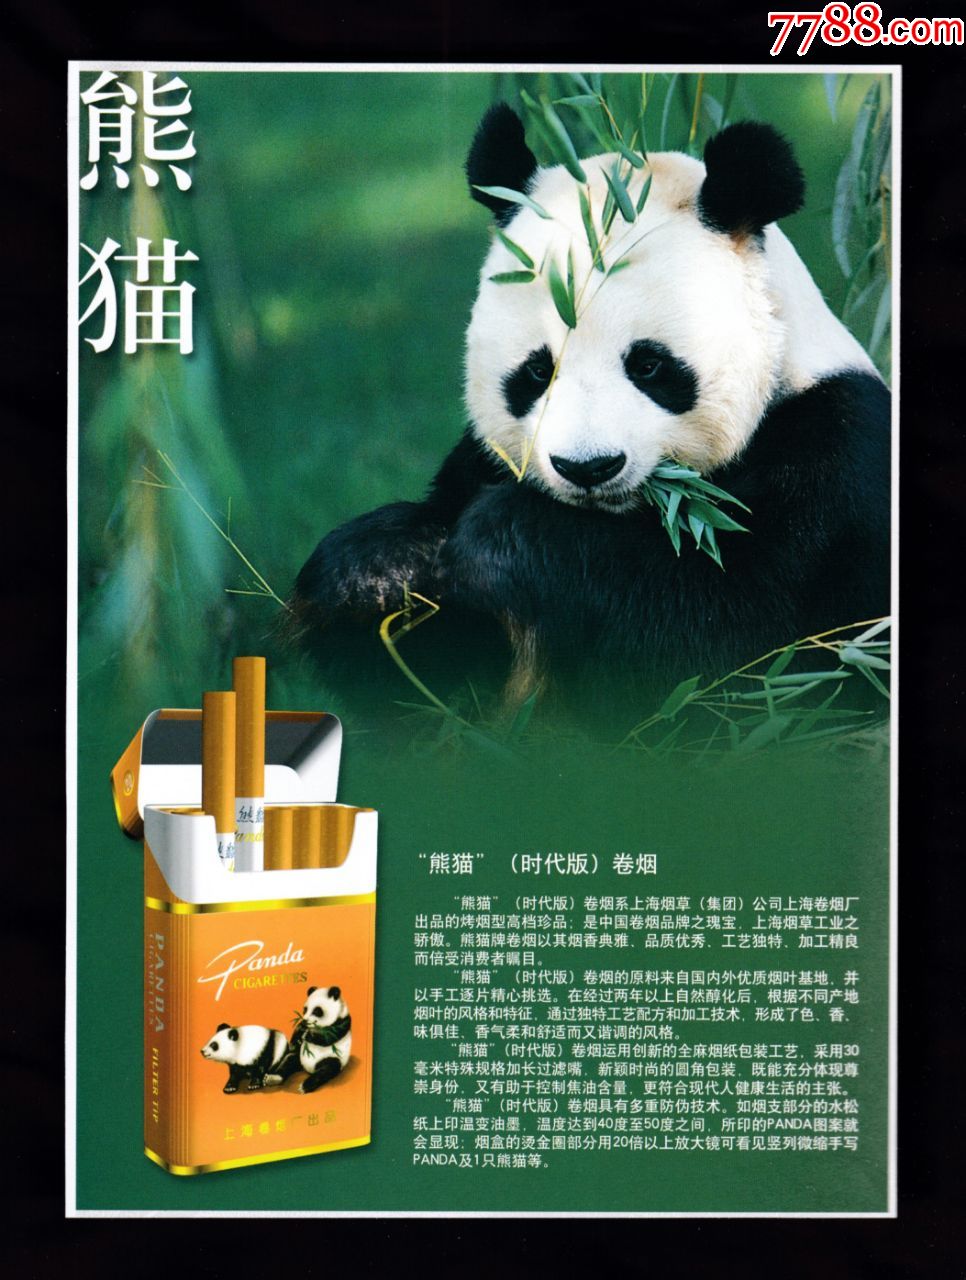 【上海熊猫香烟/哈尔滨林海灵芝香烟广告】